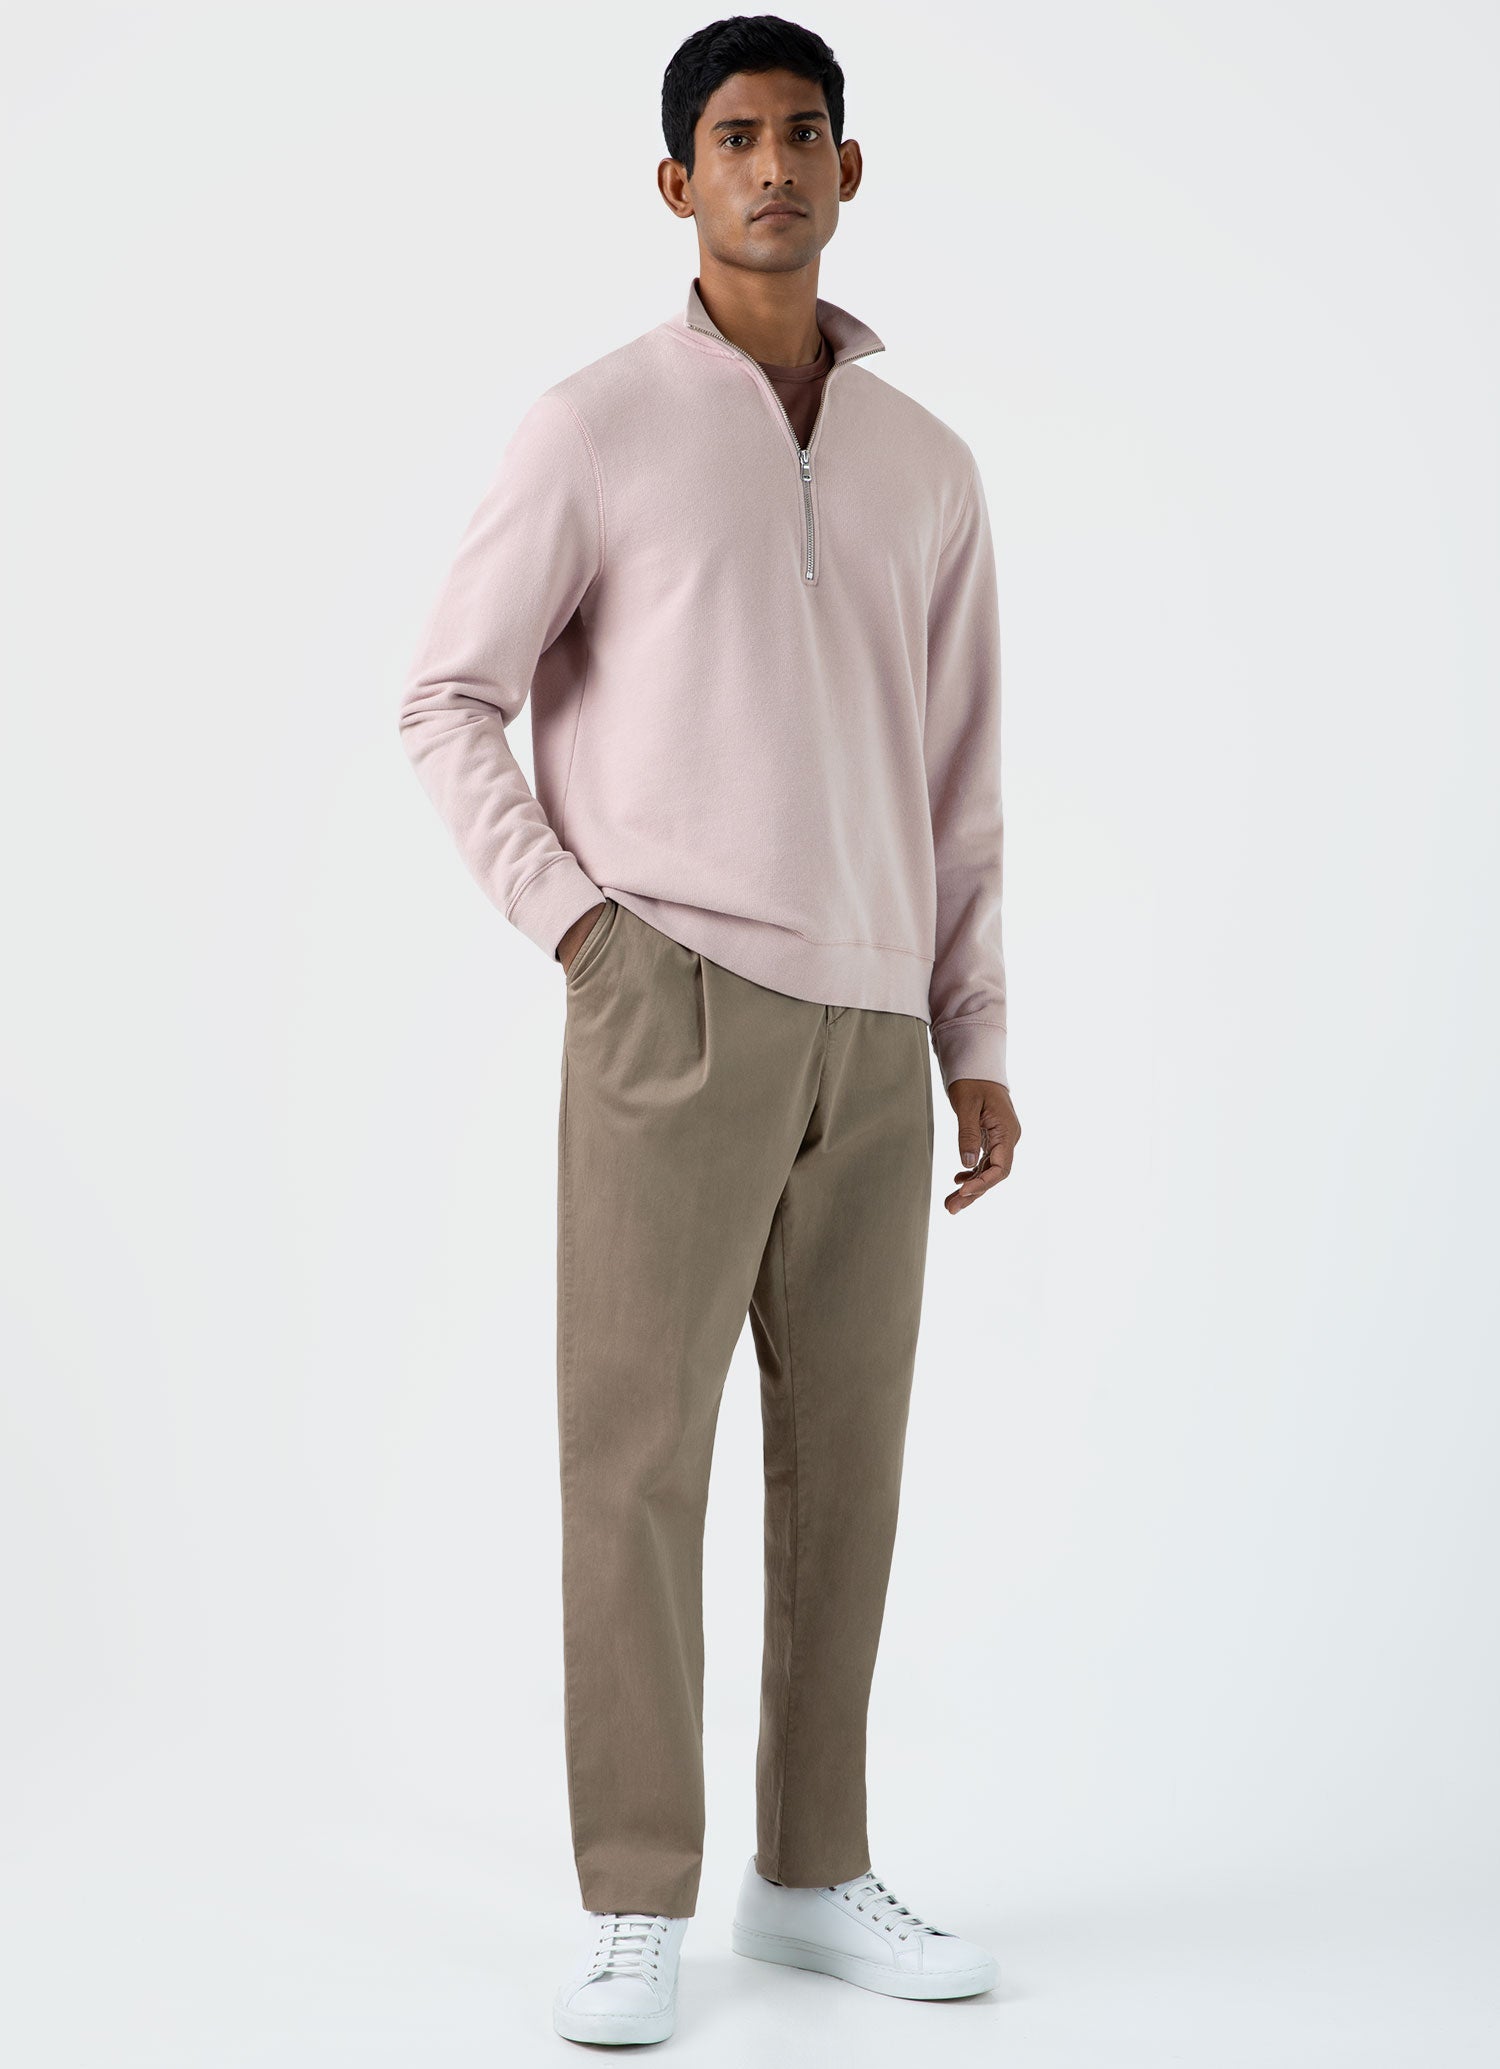 Men's Half Zip Loopback Sweatshirt in Pale Pink